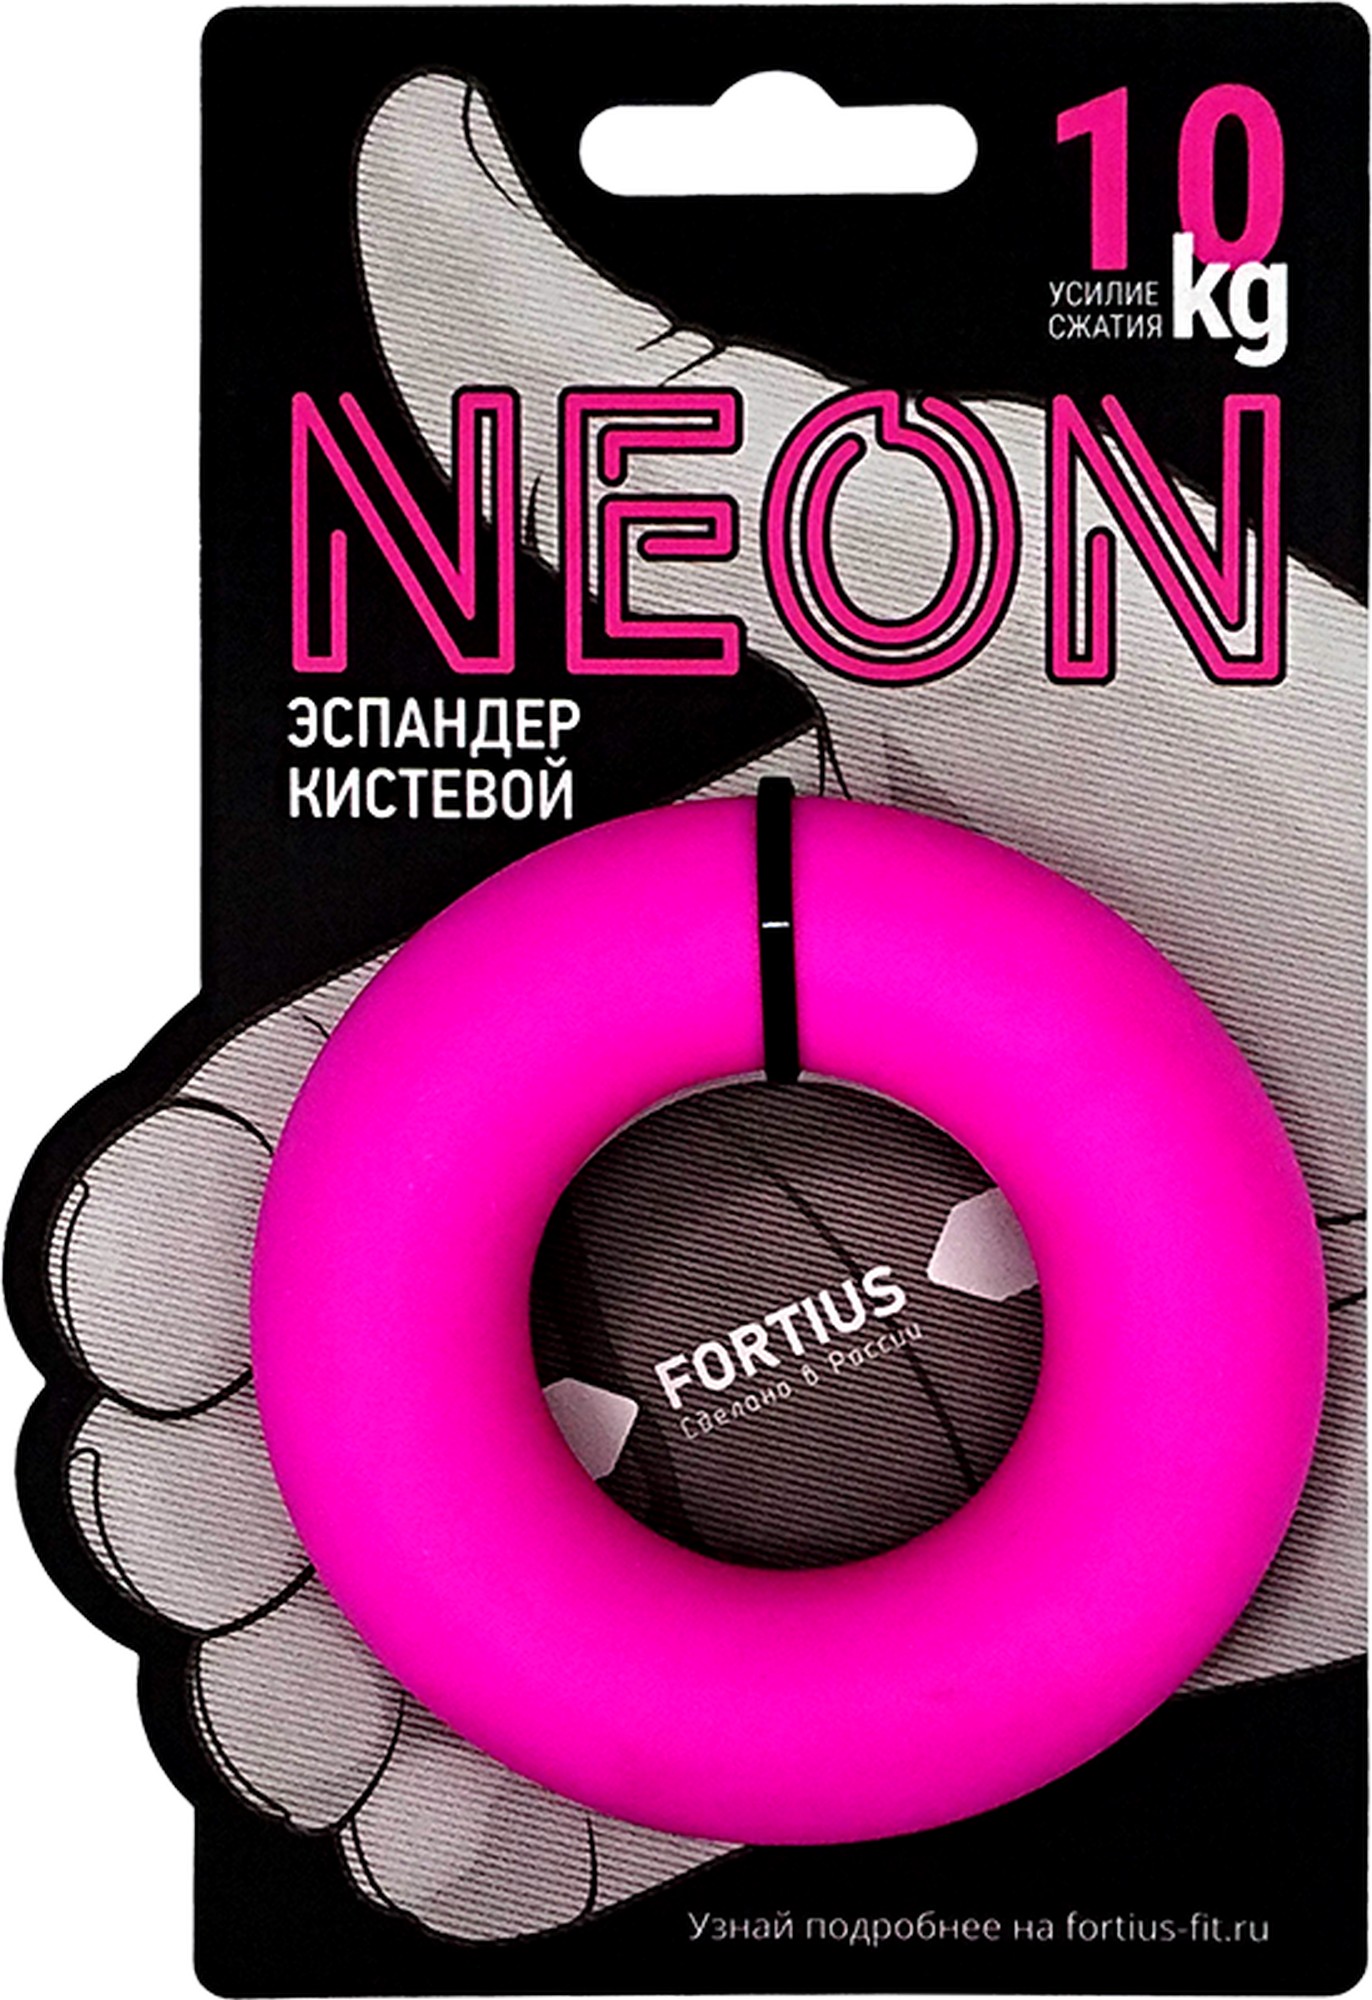 Купить Эспандер кистевой Sportex Fortius, Neon 10 кг17859 розовый,